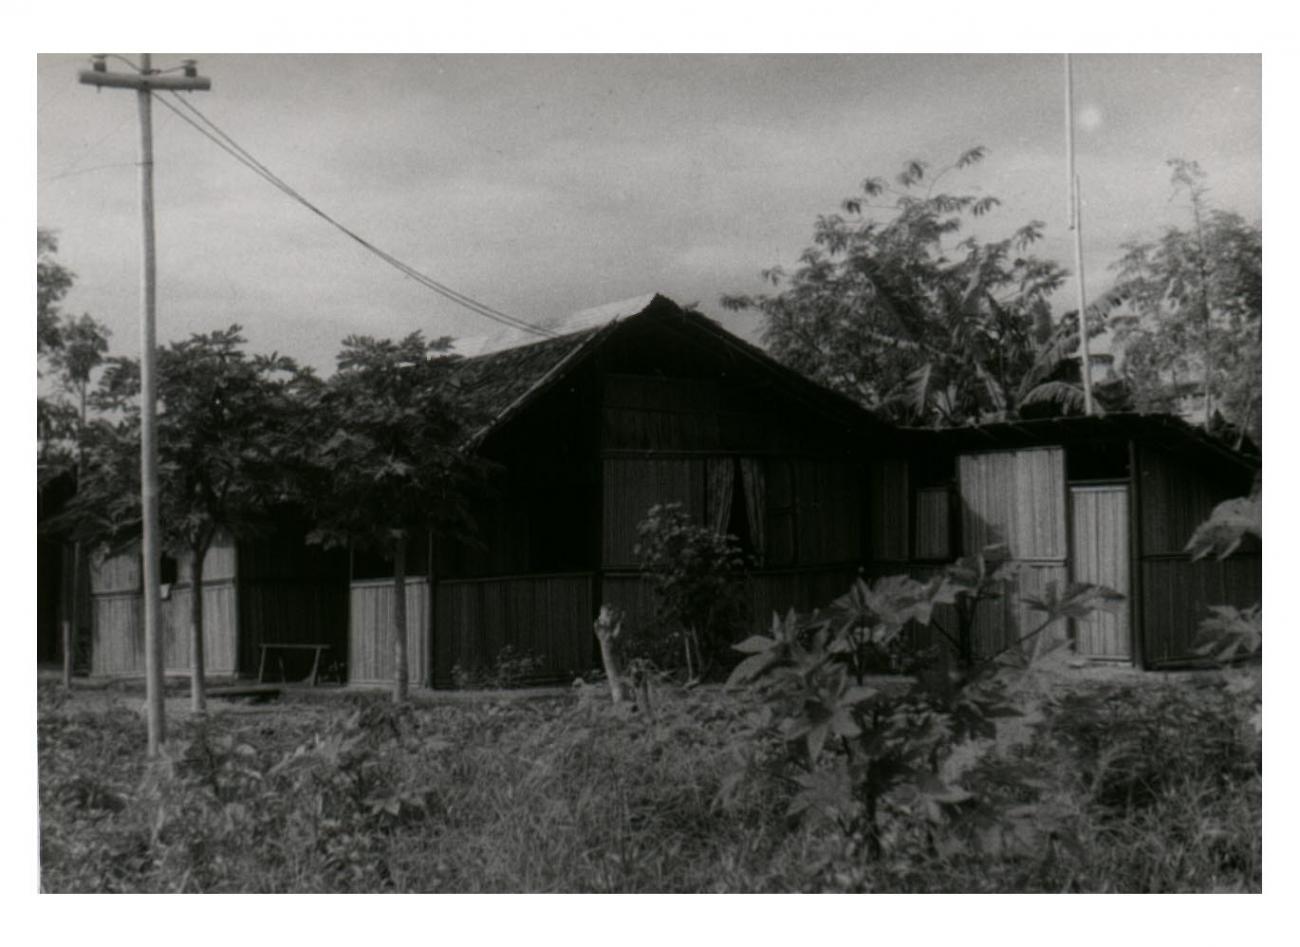 BD/54/26 - 
Manokwari, building
